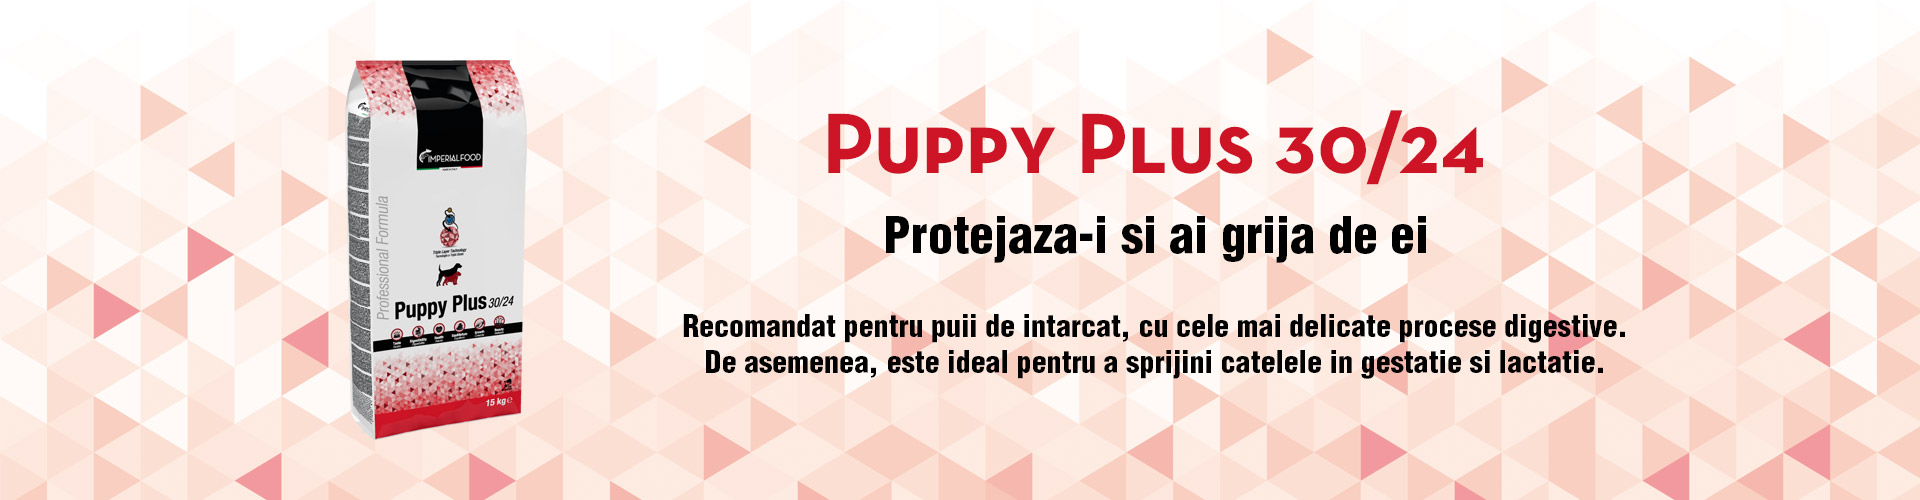 Puppy Plus 30/24